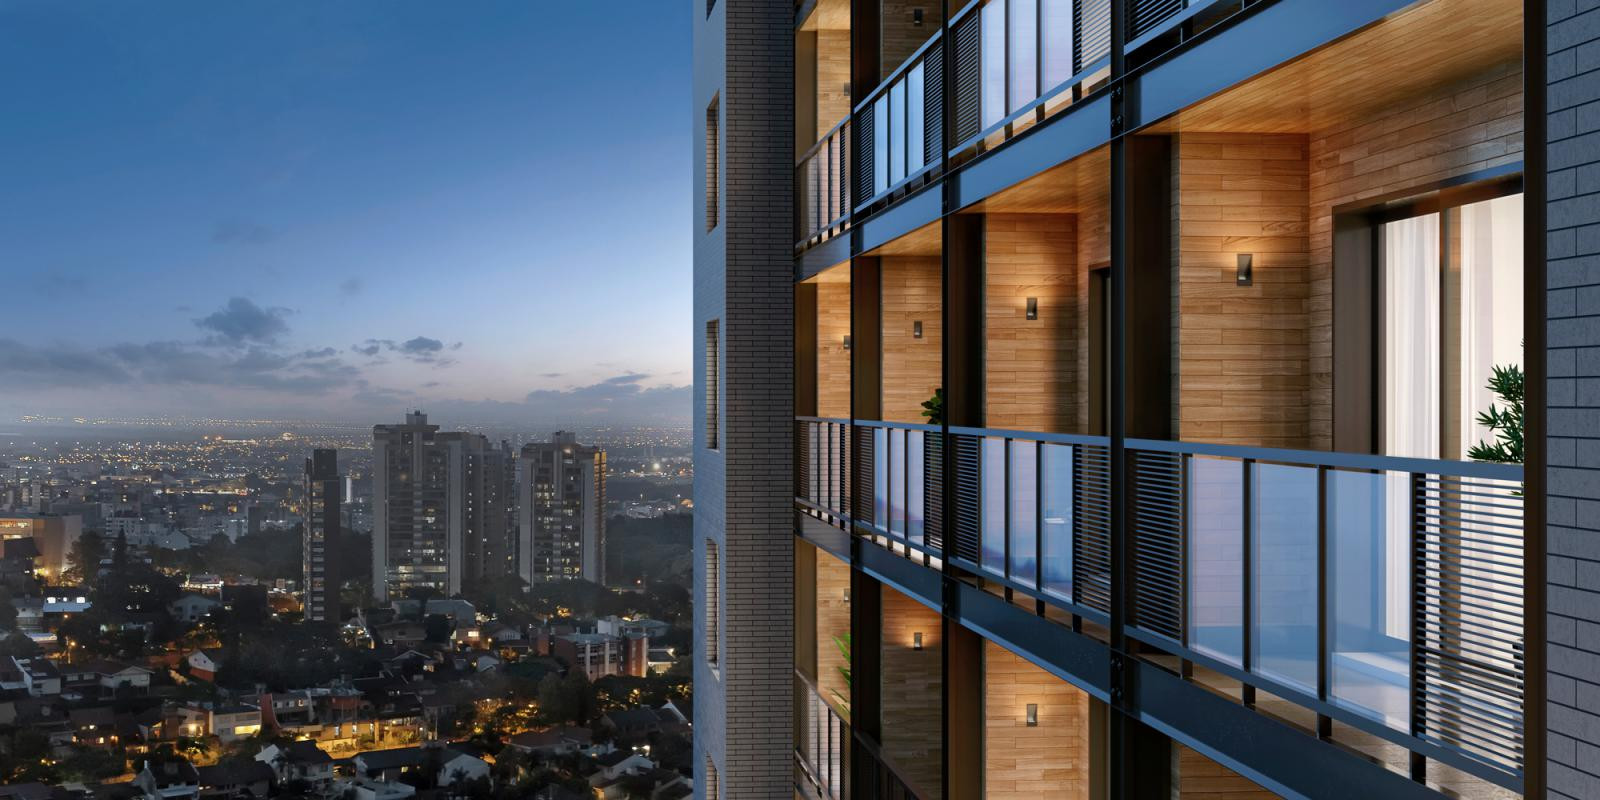 TPS Imóveis apresenta Apartamento A Venda 1 Dormitório Em Porto Alegre! Excelente imóvel a venda em Porto Alegre